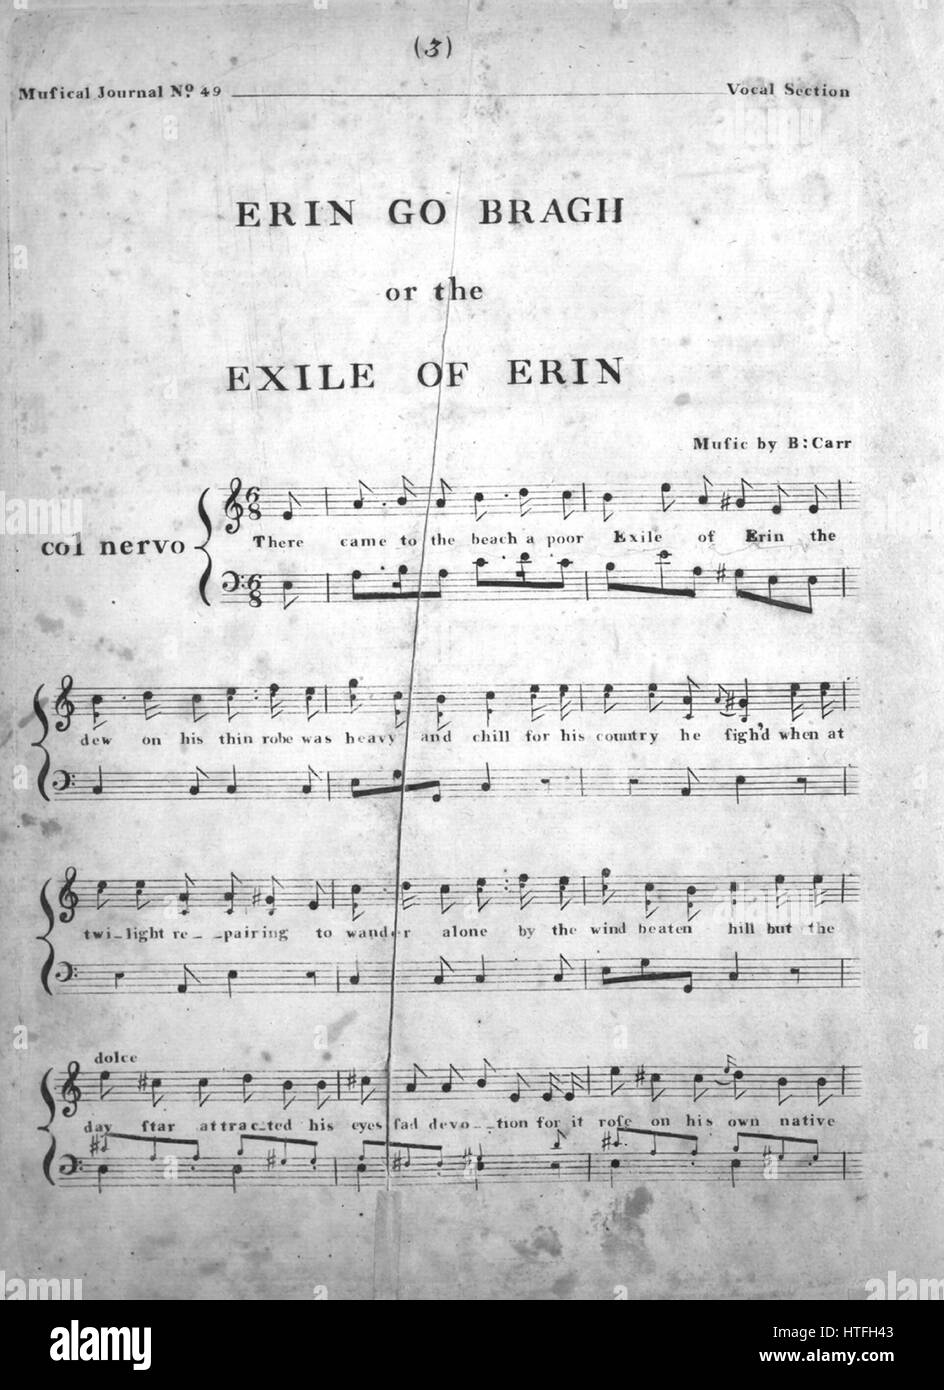 Foglio di musica immagine copertina della canzone "Erin Go Bragh o,  l'esilio di Erin', con paternitã originale lettura delle note di 'Musica da  B Carr', Stati Uniti, 1900. L'editore è elencato come '